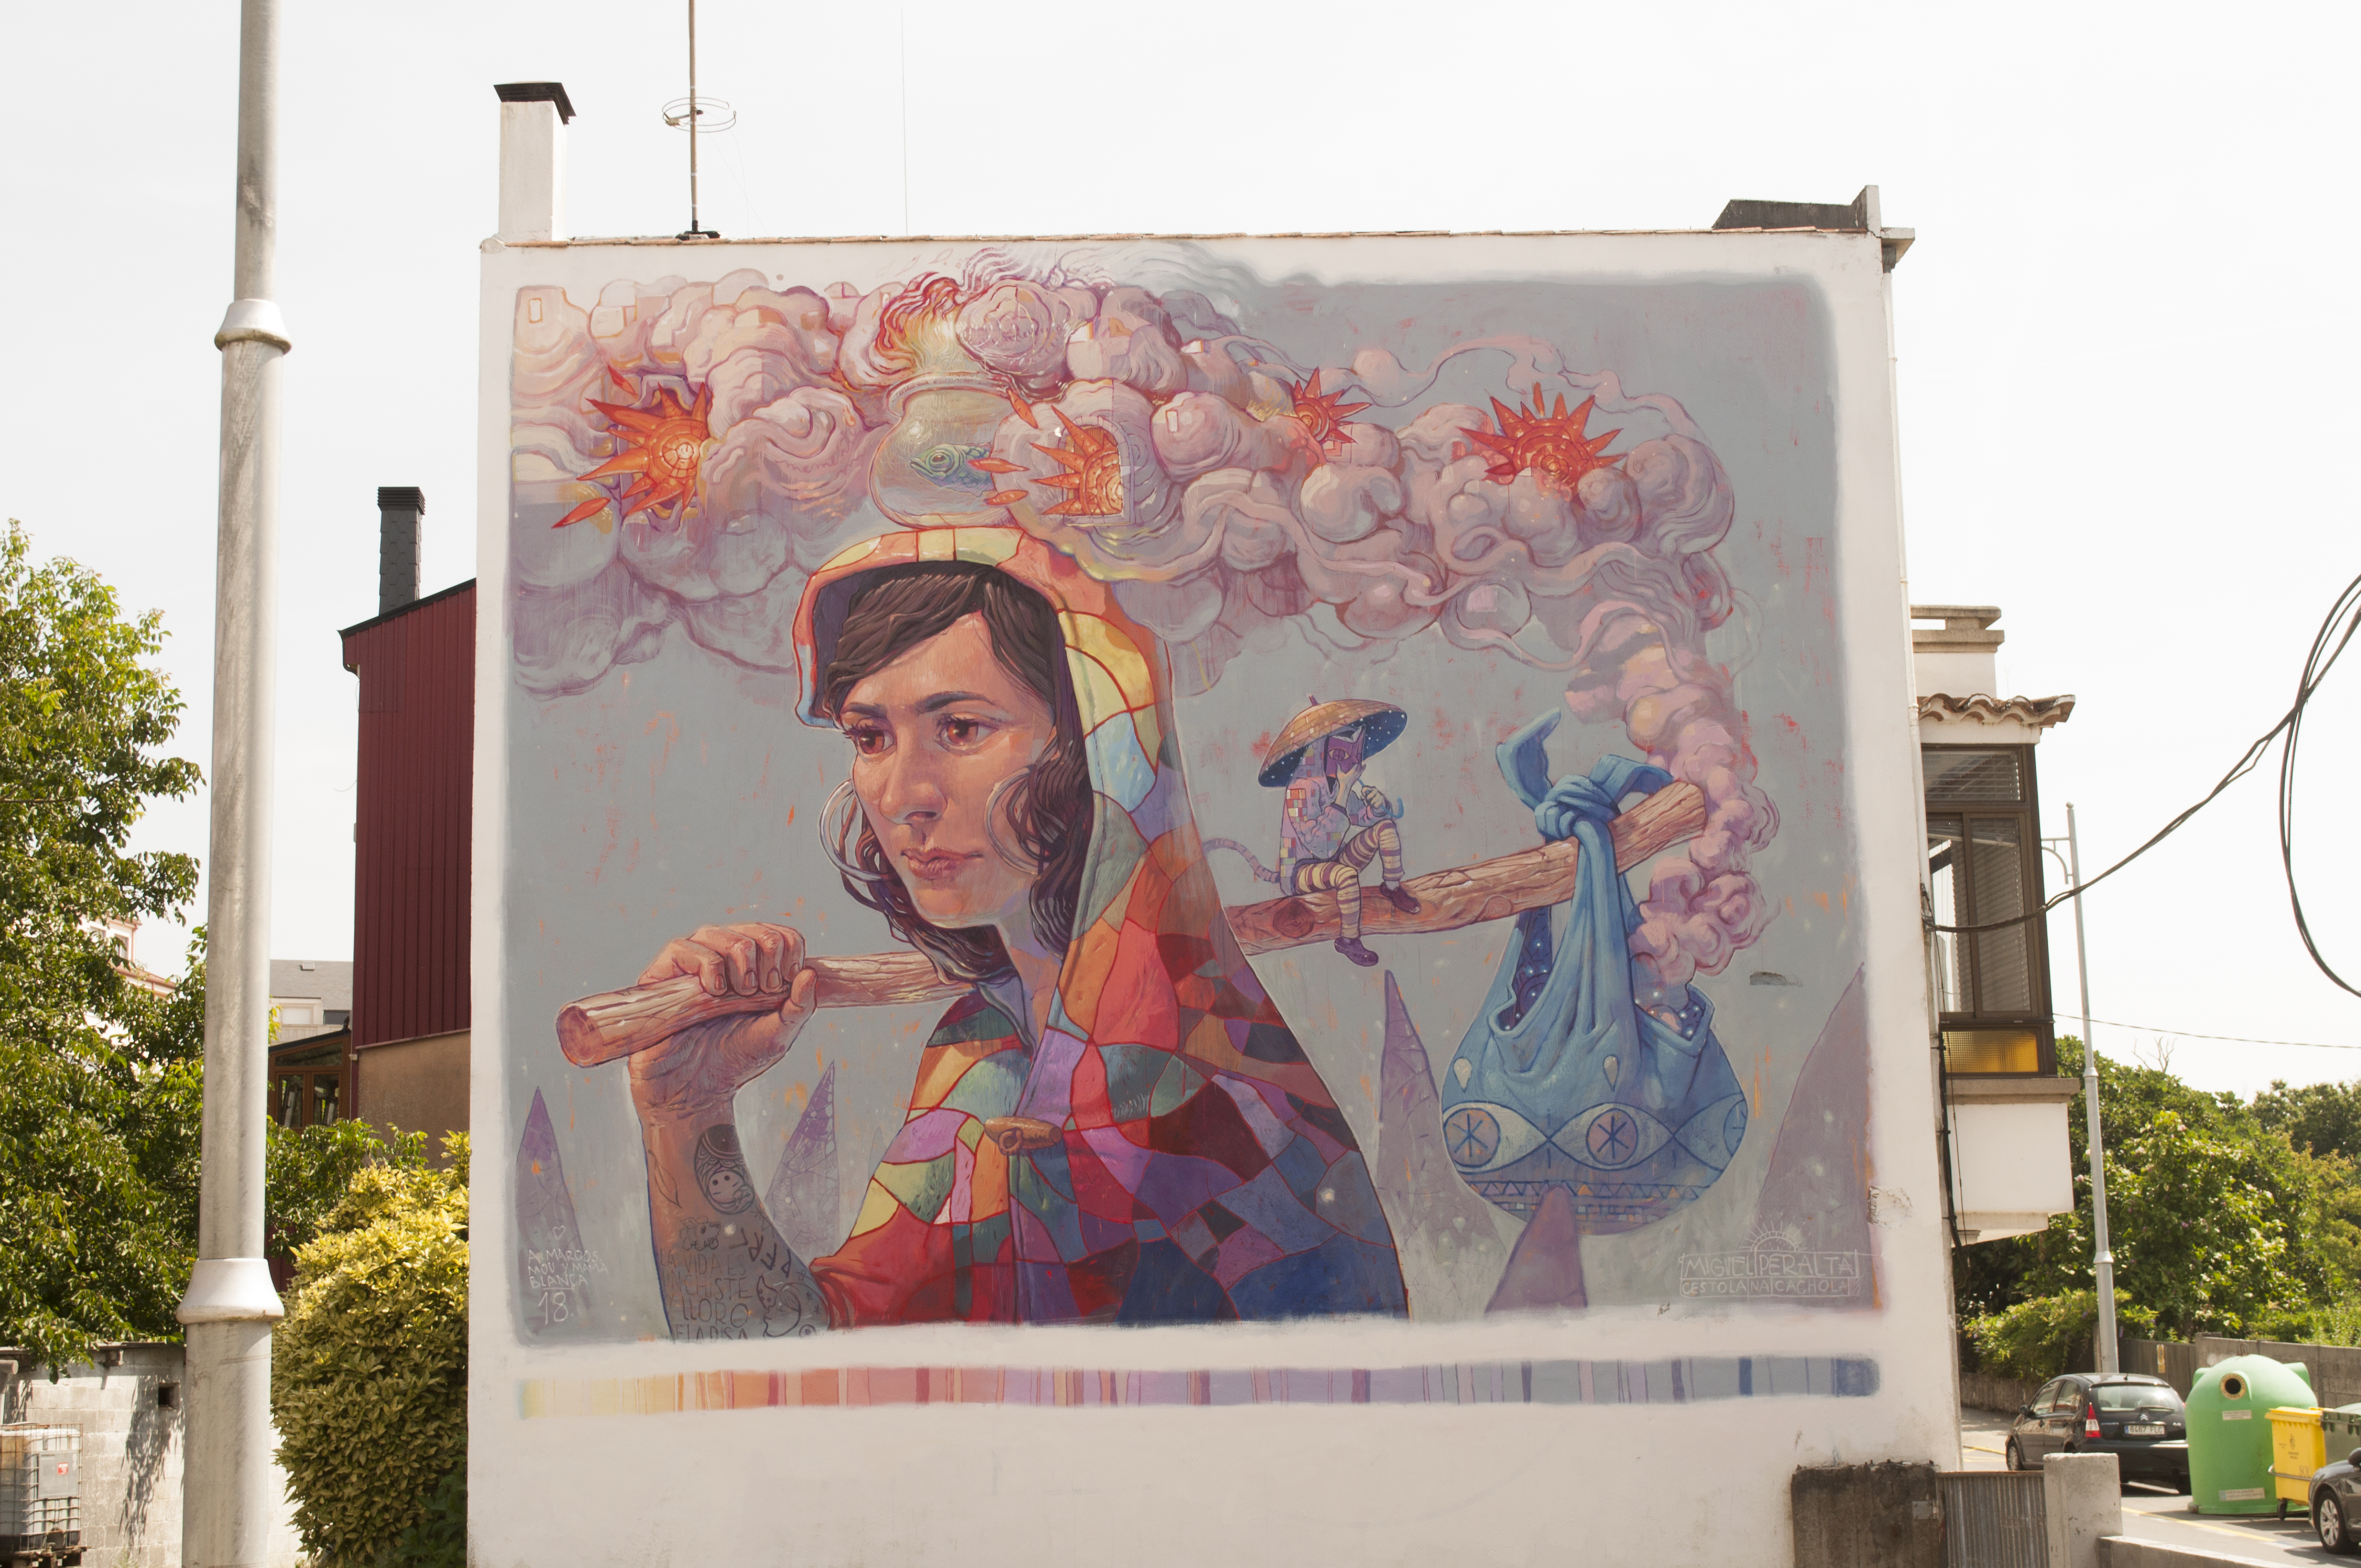 Miguel Peralta&mdash;Wall by MIGUEL PERALTA for DESORDES CREATIVAS 2018 in Ordes (Galicia-Spain)